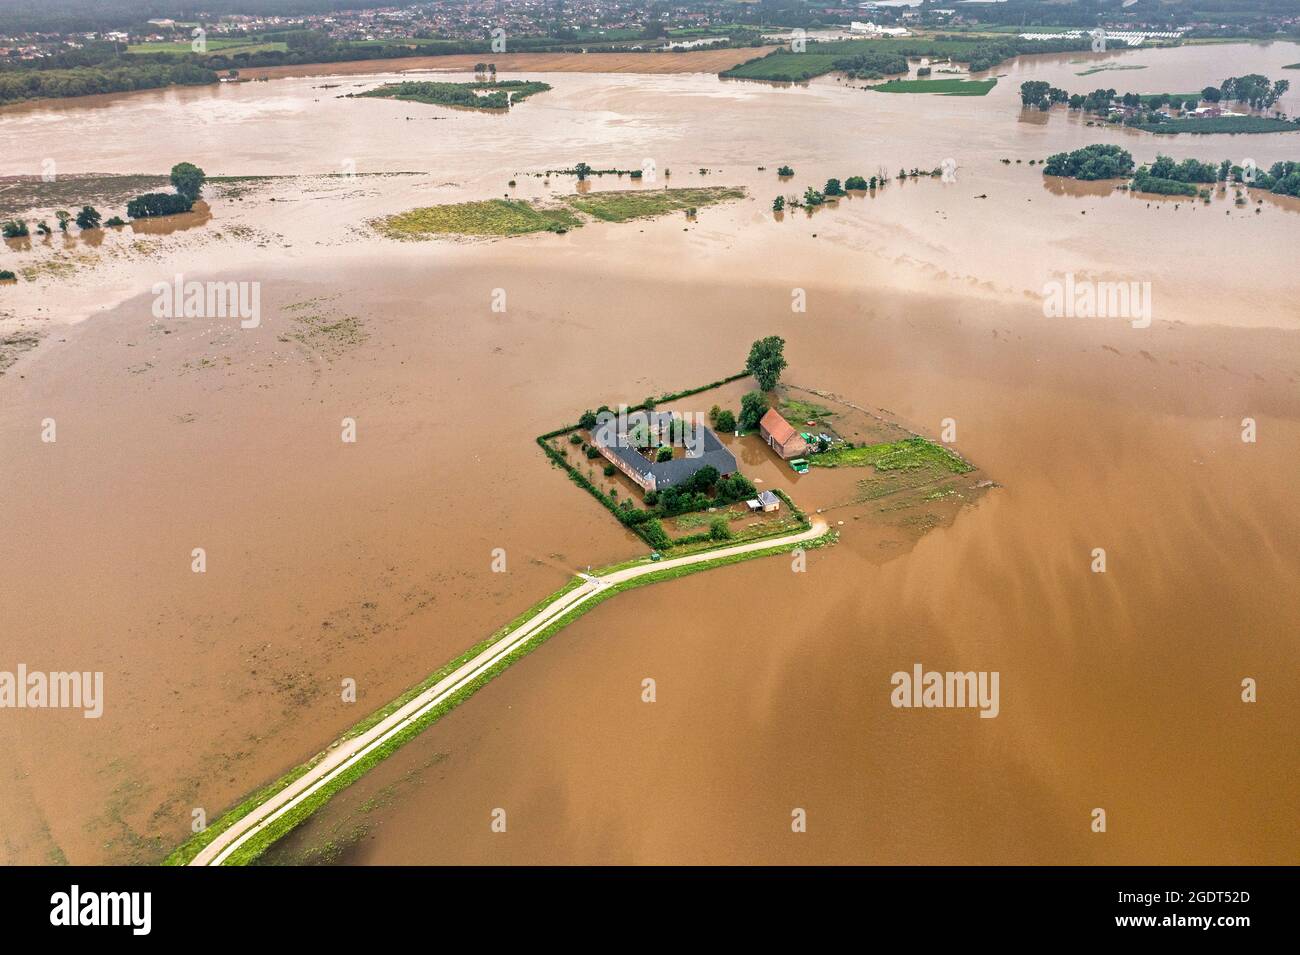 Niederlande, Itteren. Überflutete Farm- und Ackerflächen aufgrund der Überschwemmung des Maas-Flusses. Antenne. Raum für das Flussprojekt. Ruimte voor de Rivier Projekt. Stockfoto